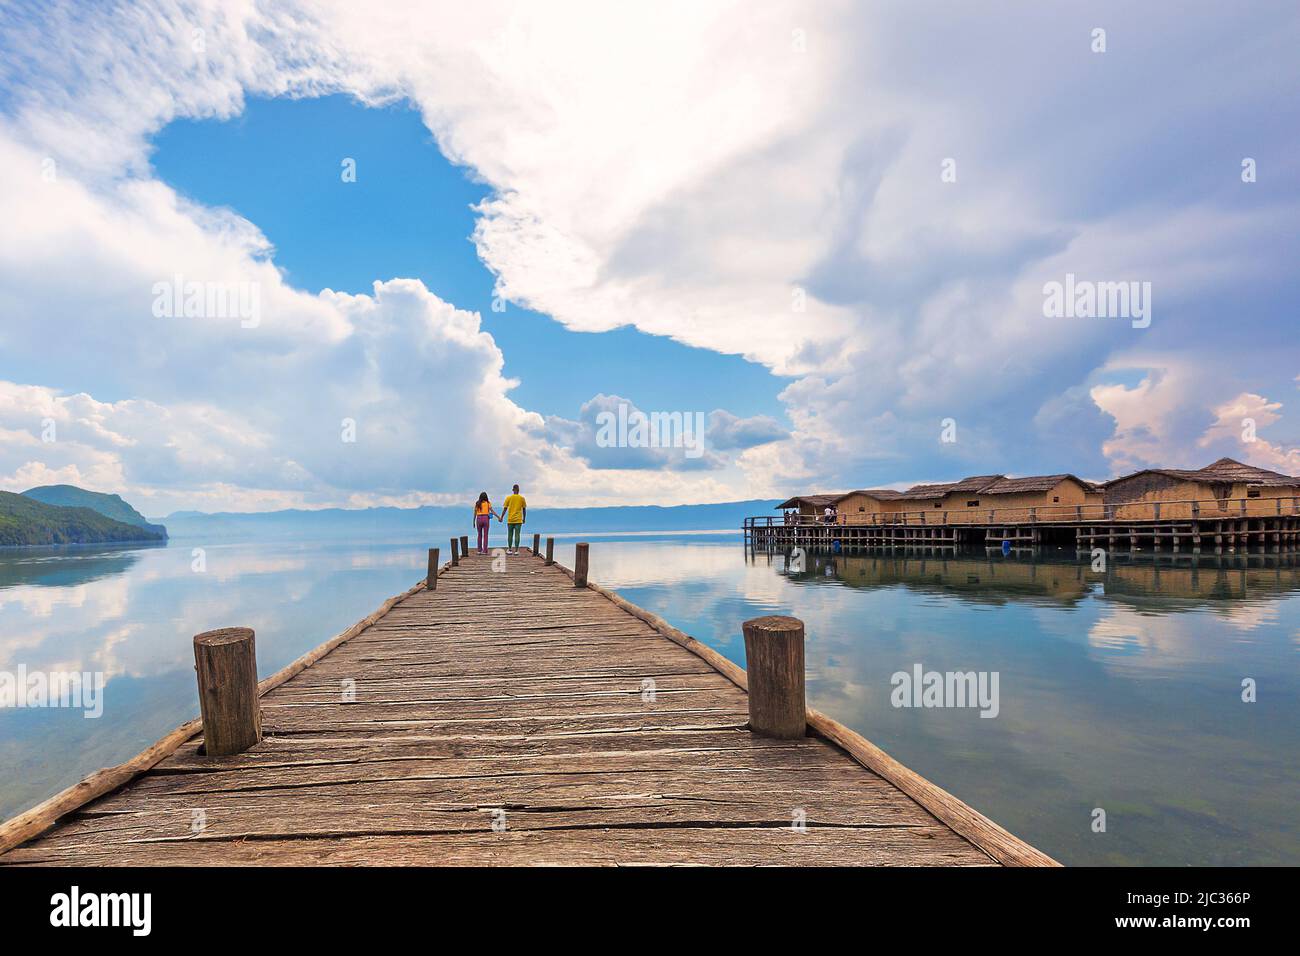 Hölzerner Pier und Wolkenlandschaft mit einem Paar am Ende des Docks in der Bucht, die als Knochenbucht im Ohridsee, Mazedonien, bekannt ist. Stockfoto